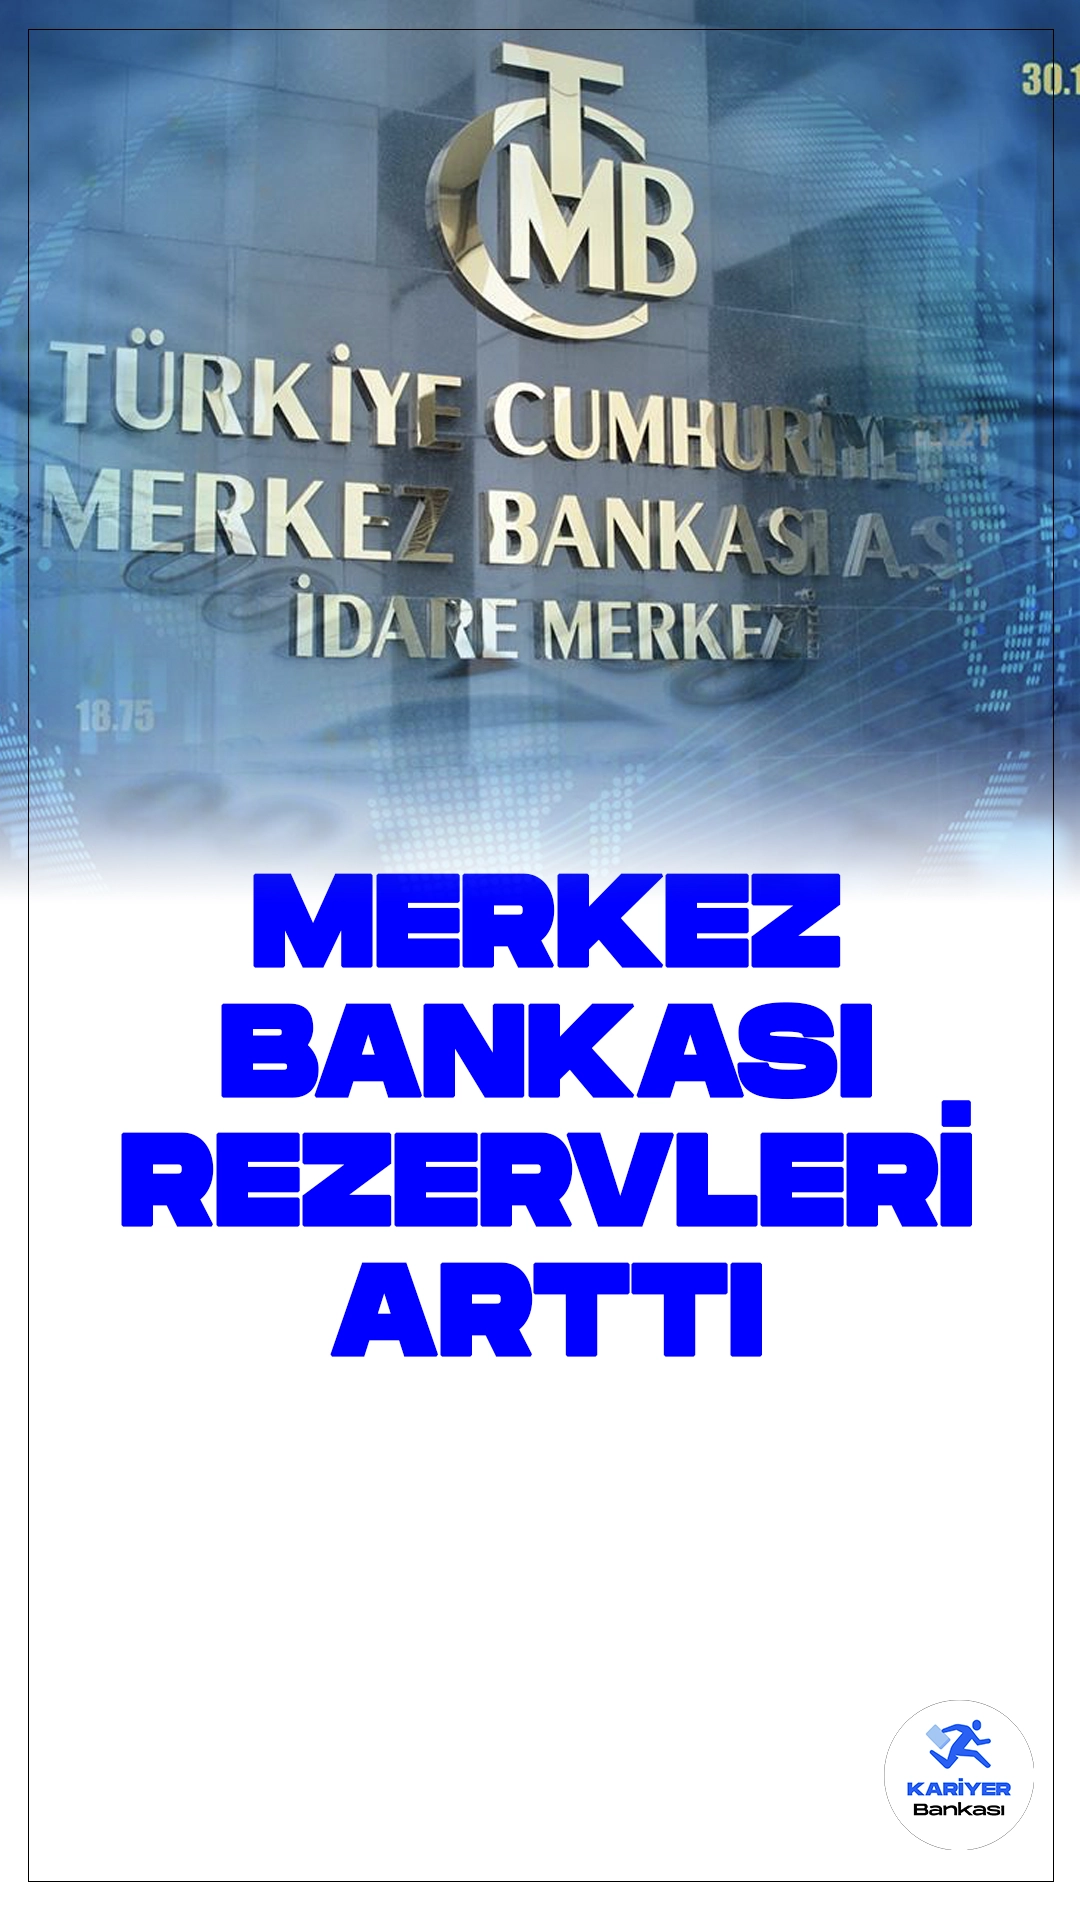 Merkez Bankası Rezerv Artışıyla Güçlendi.Türkiye Cumhuriyet Merkez Bankası'nın Toplam Rezervleri Yükselişte